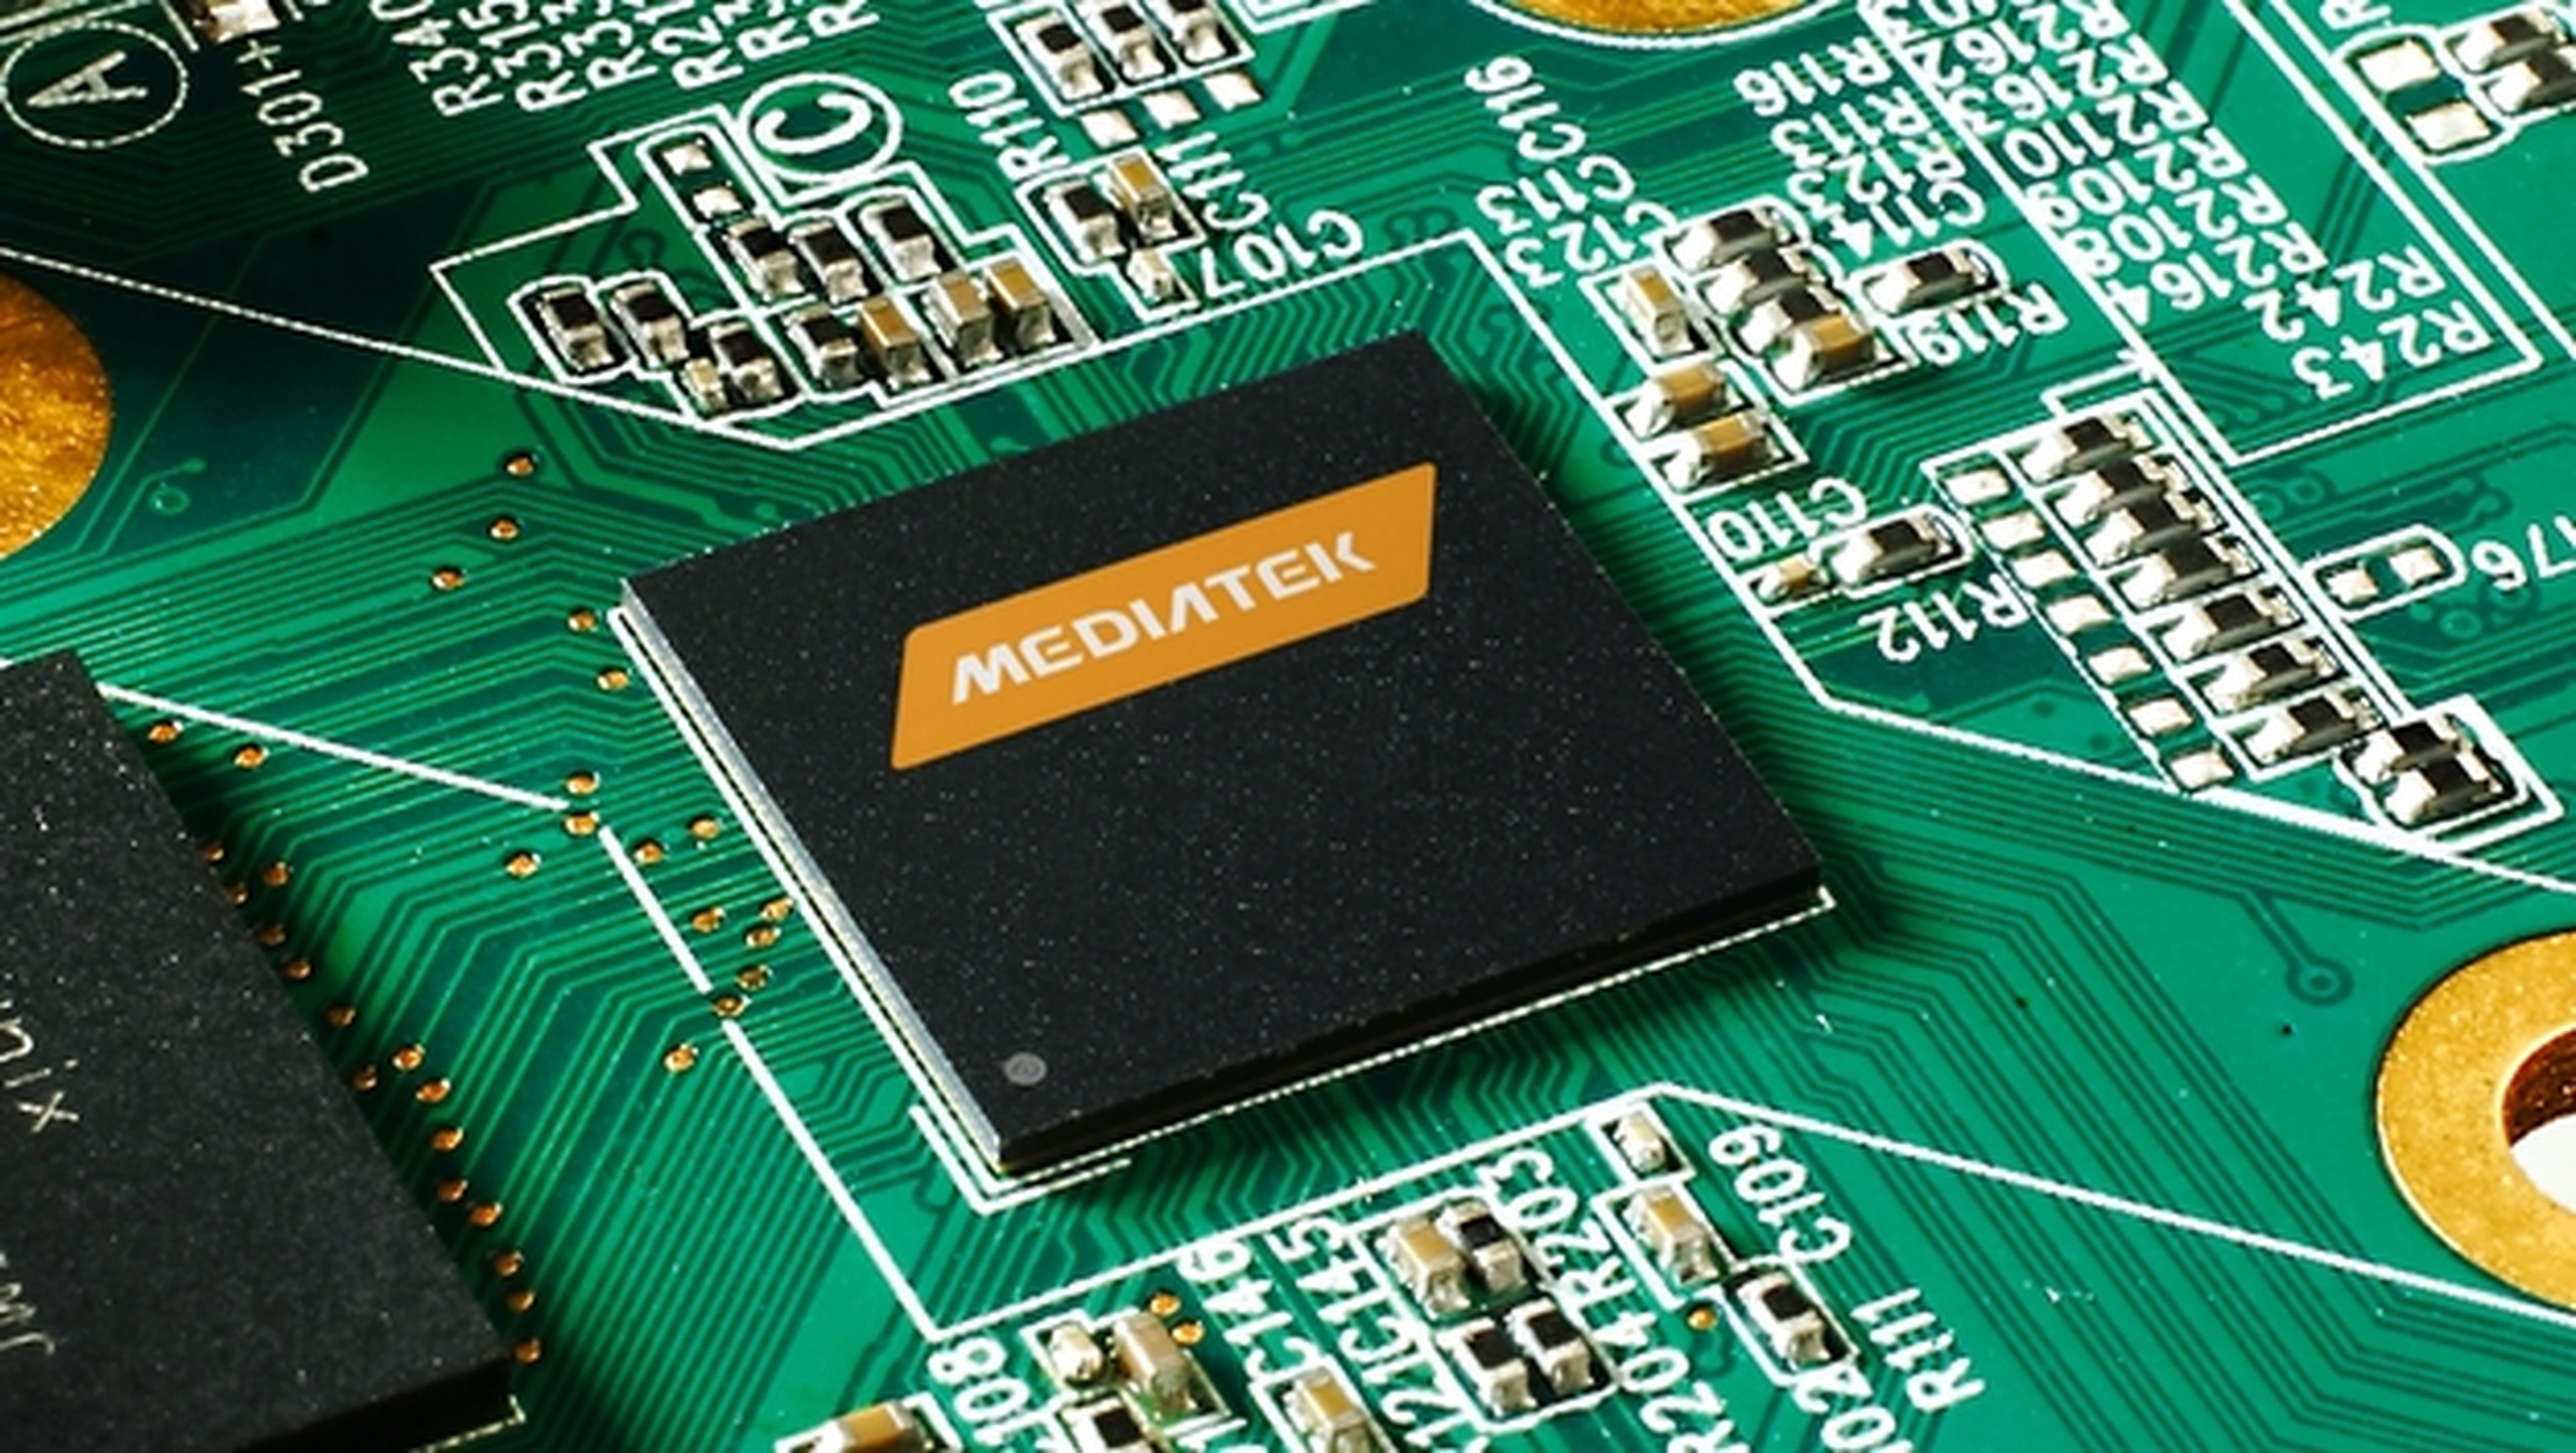 Mediatek Helio X20, el SoC de 10 núcleos para smartphones.